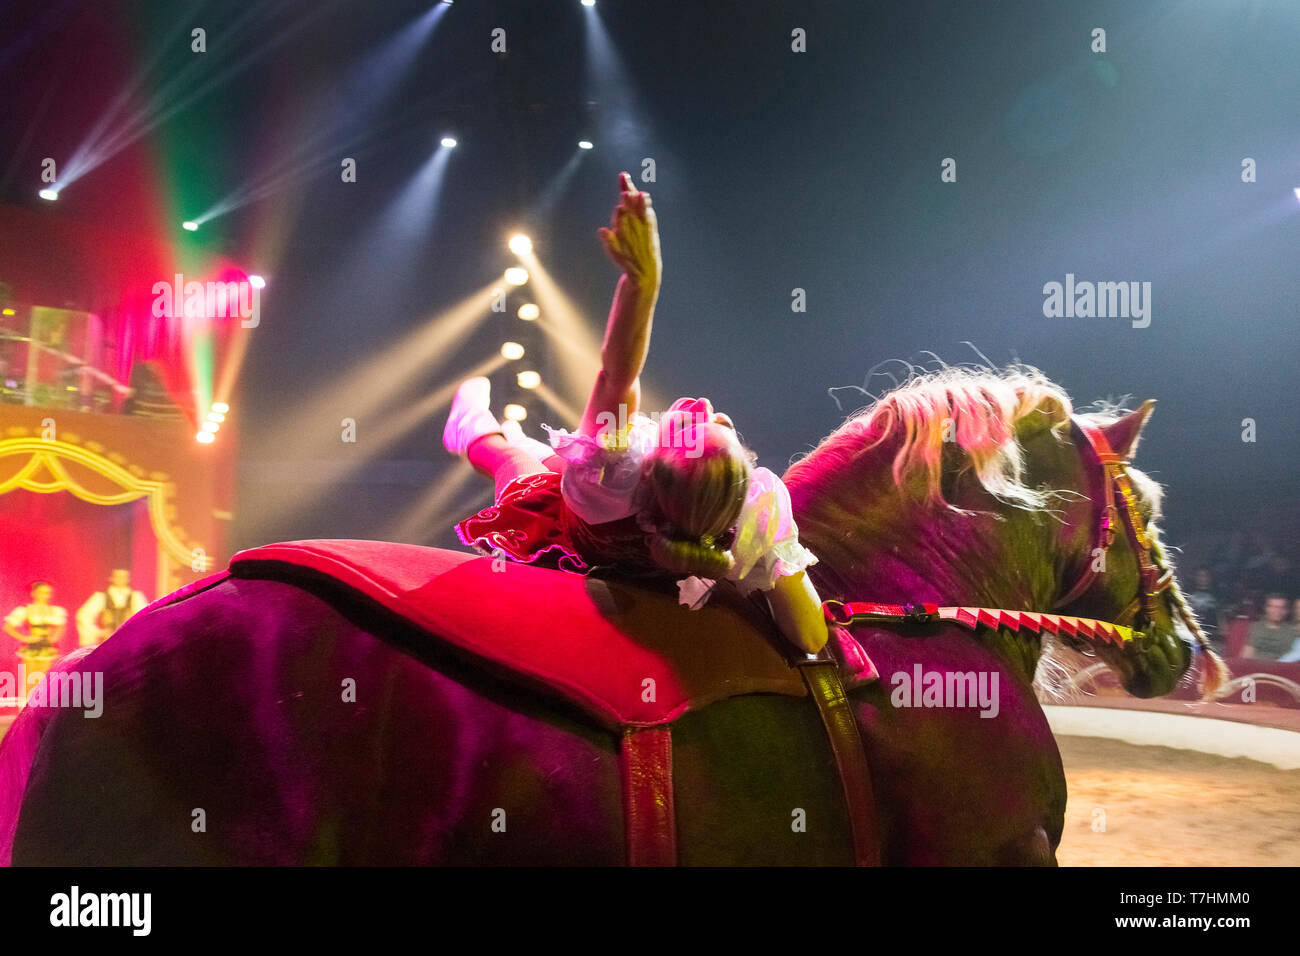 Artiste allongé sur le dos d'un cheval de trait lourd russe au cours d'un spectacle au Cirque Knie Louis junior, Autriche Banque D'Images